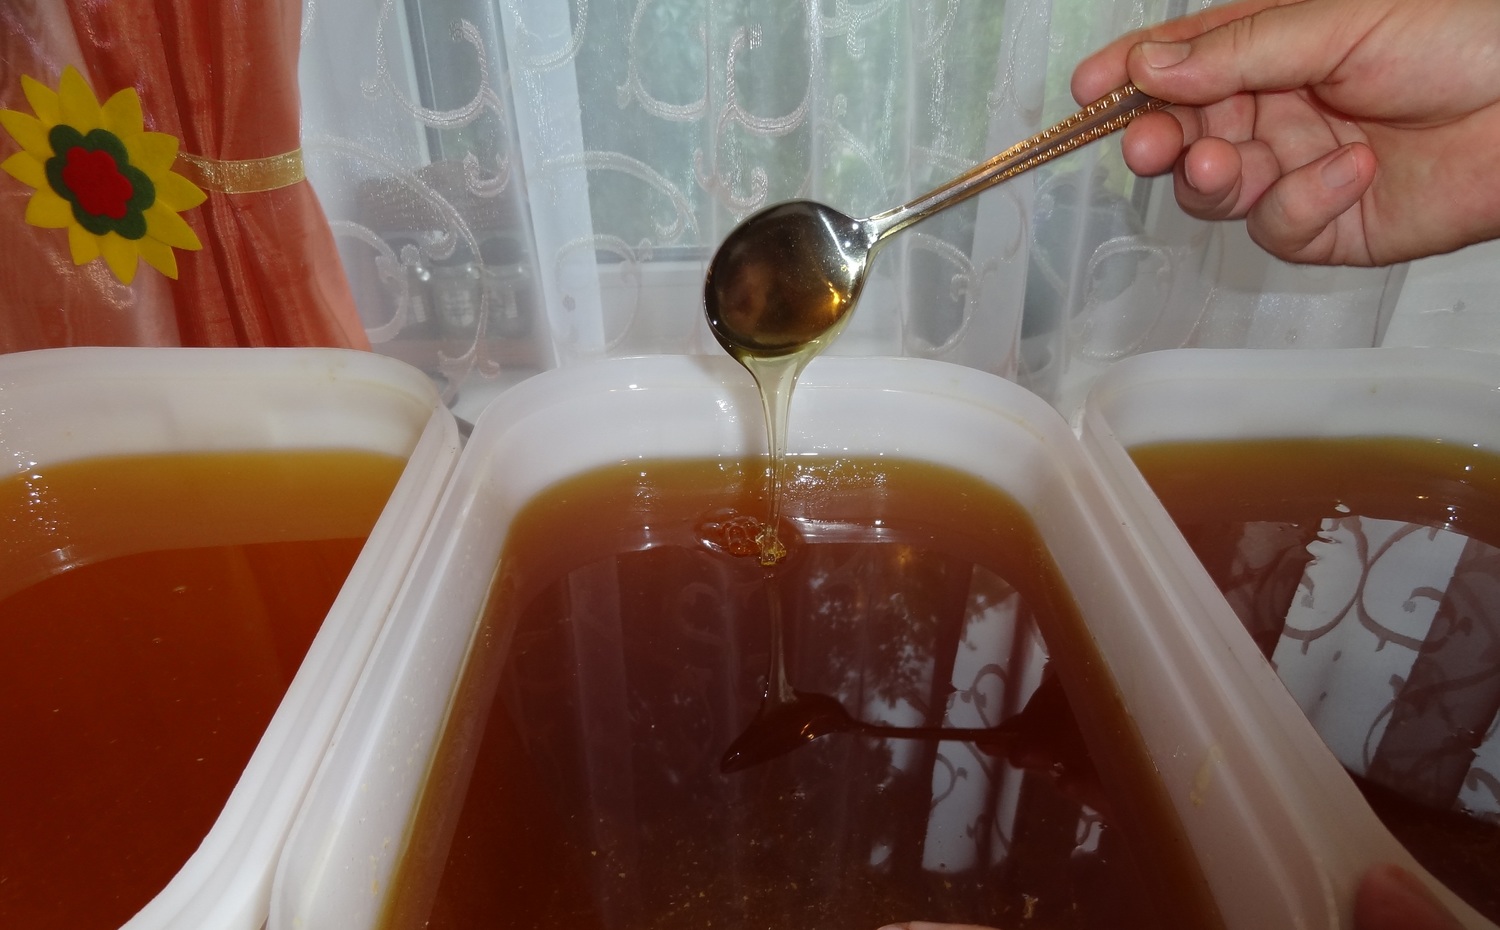 <span style="font-weight: normal;">Натуральный мёд из нектара трав Саратовского Заволжья отличается насыщенным вкусом. В творенье Божьем кладезь силы.</span><br>